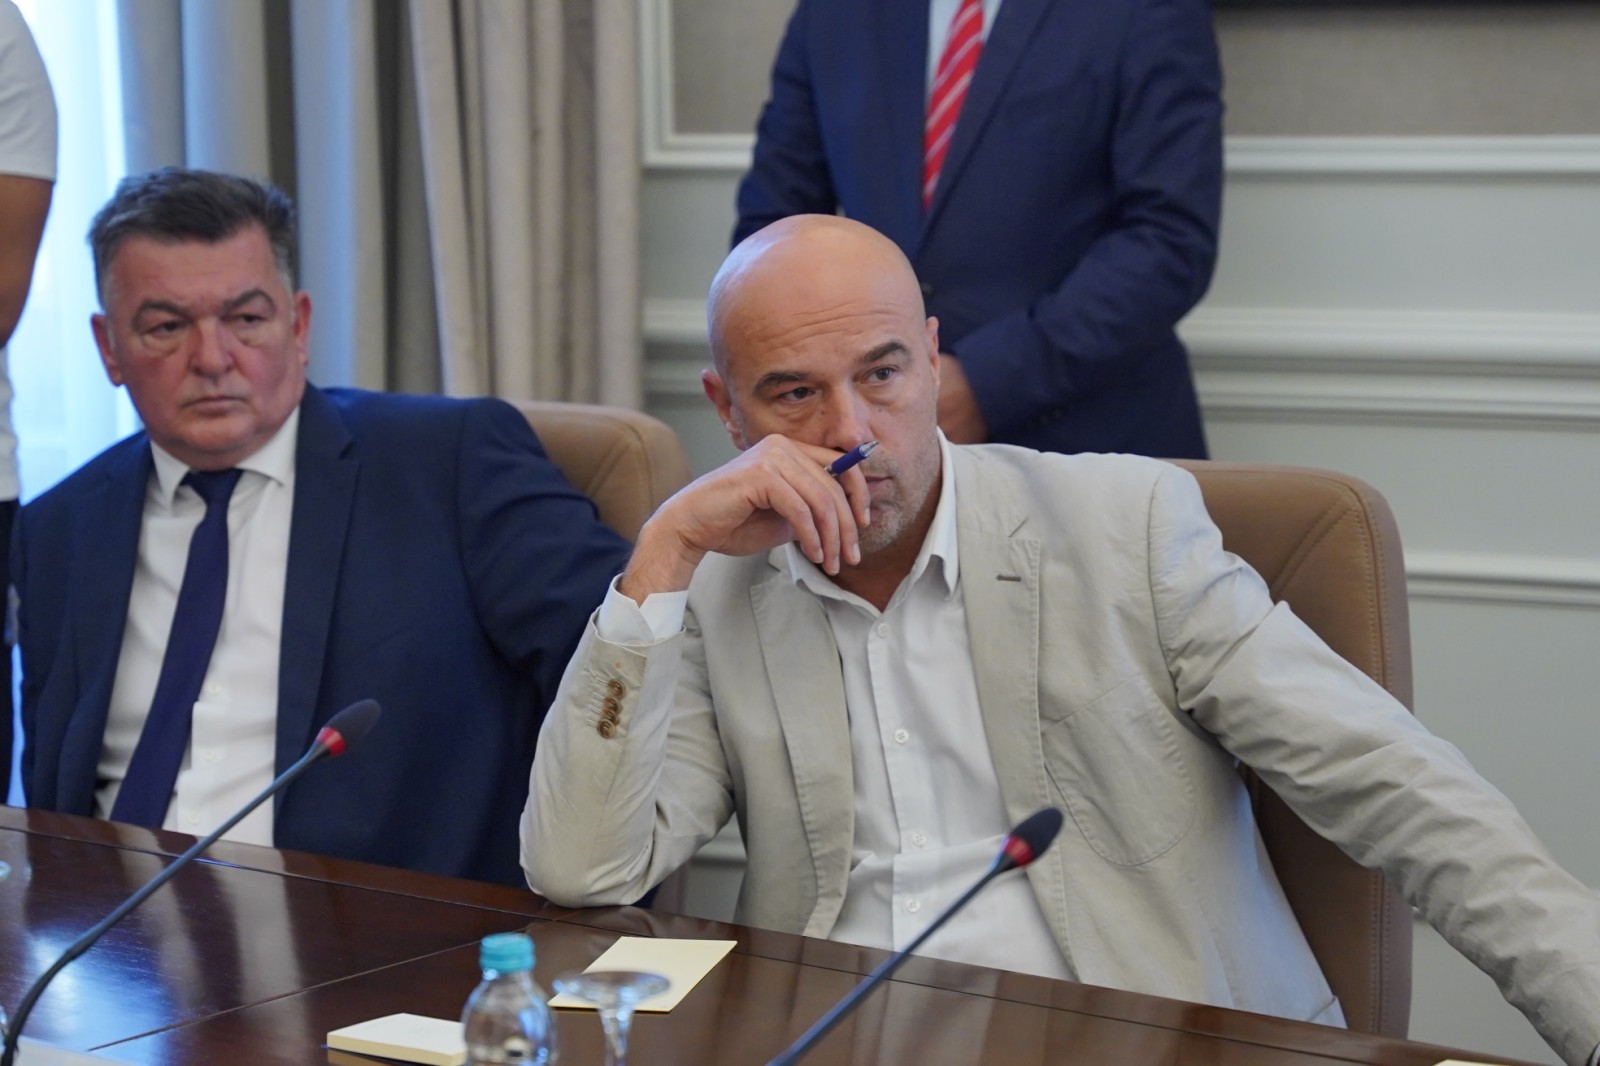 Milan Tegeltija imenovan za novog konzula BiH u Rijeci